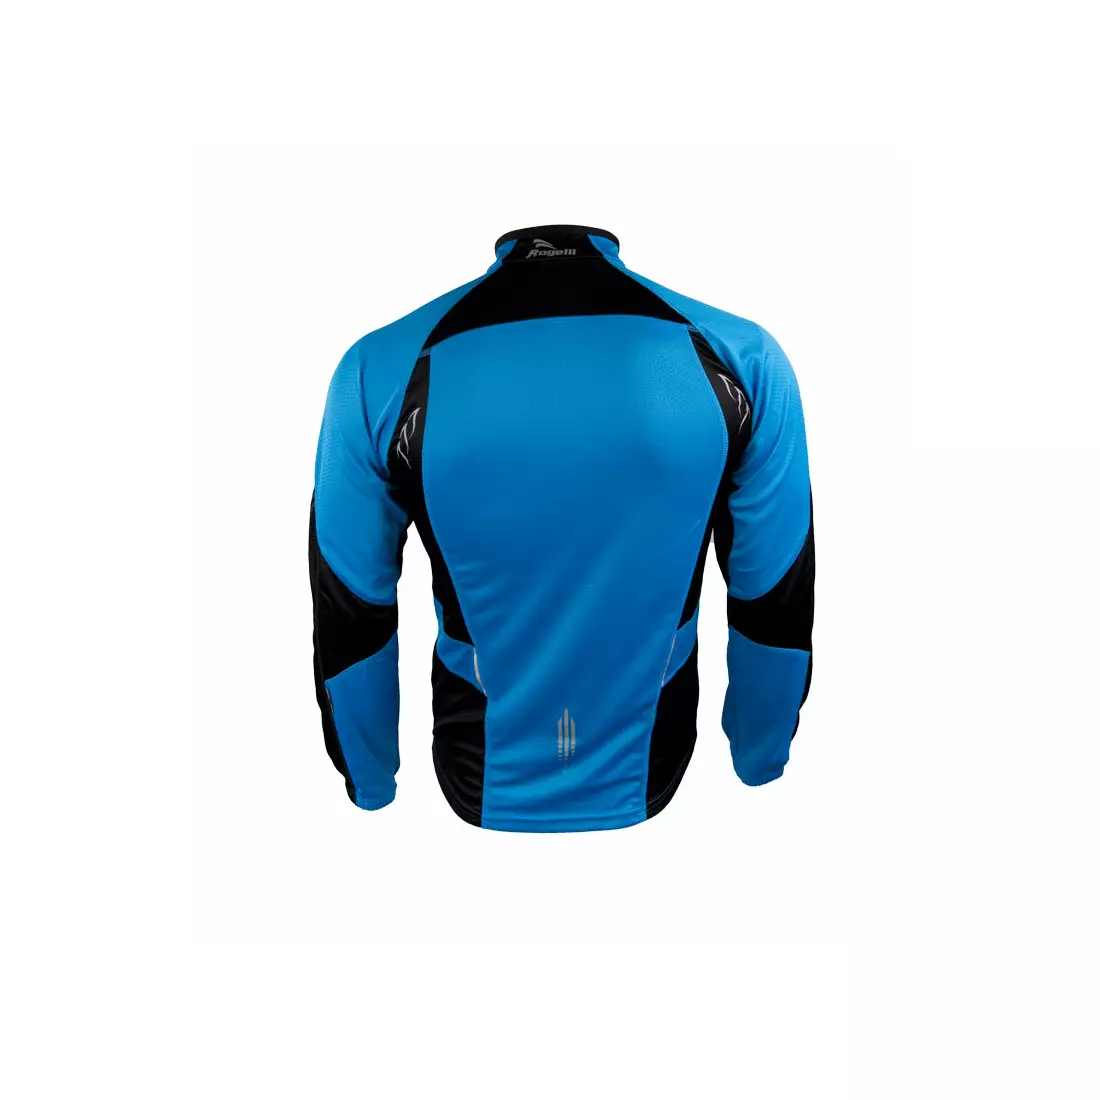 ROGELLI RUN TORRANCE - pánské sportovní tričko, dlouhý rukáv